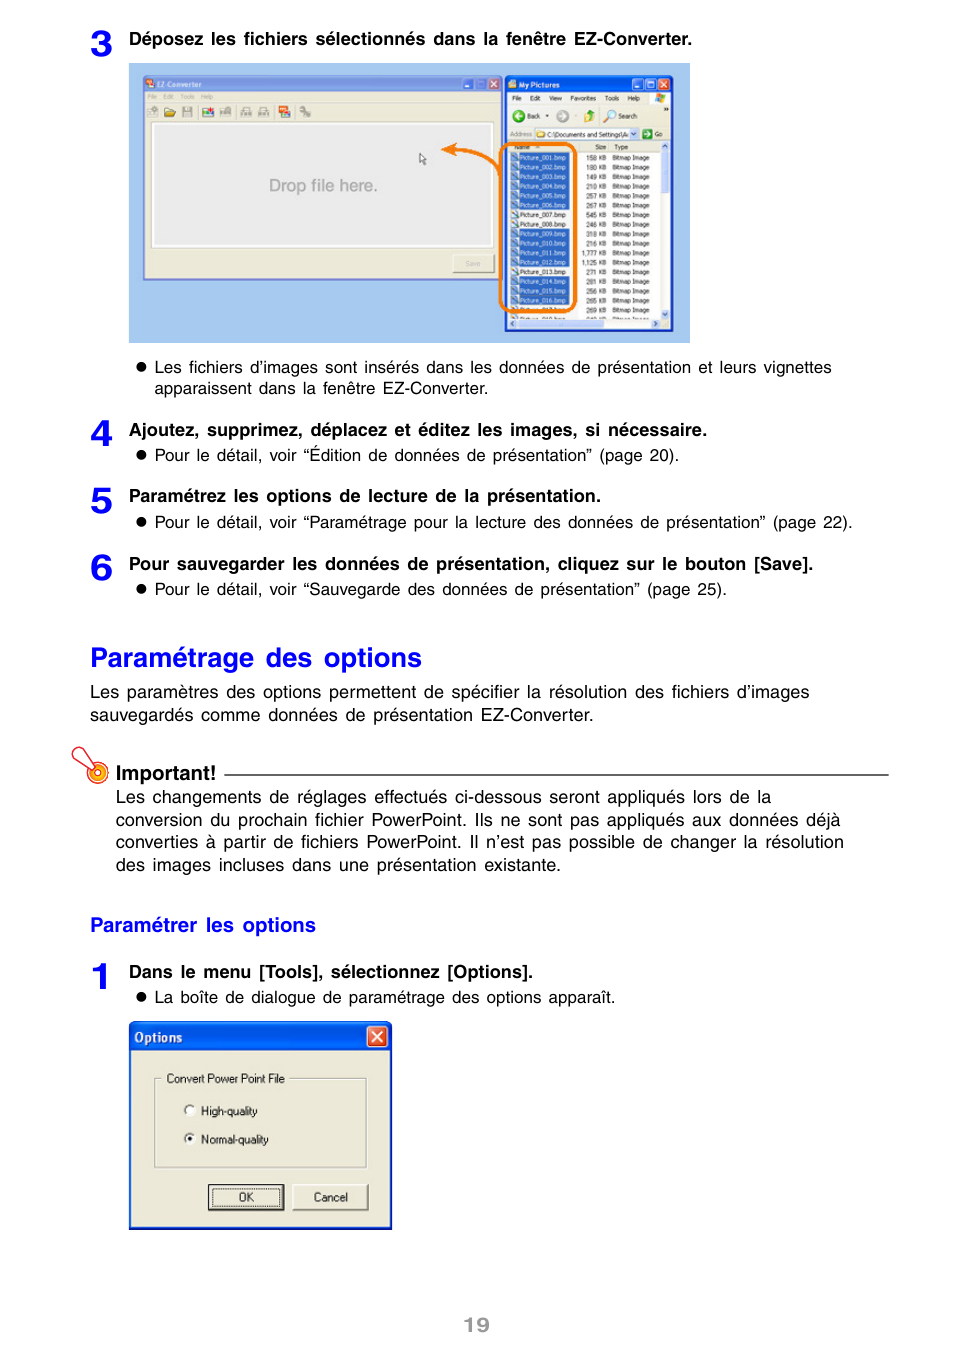 Paramétrage des options | Casio YP-100 Manuel d'utilisation | Page 19 / 112